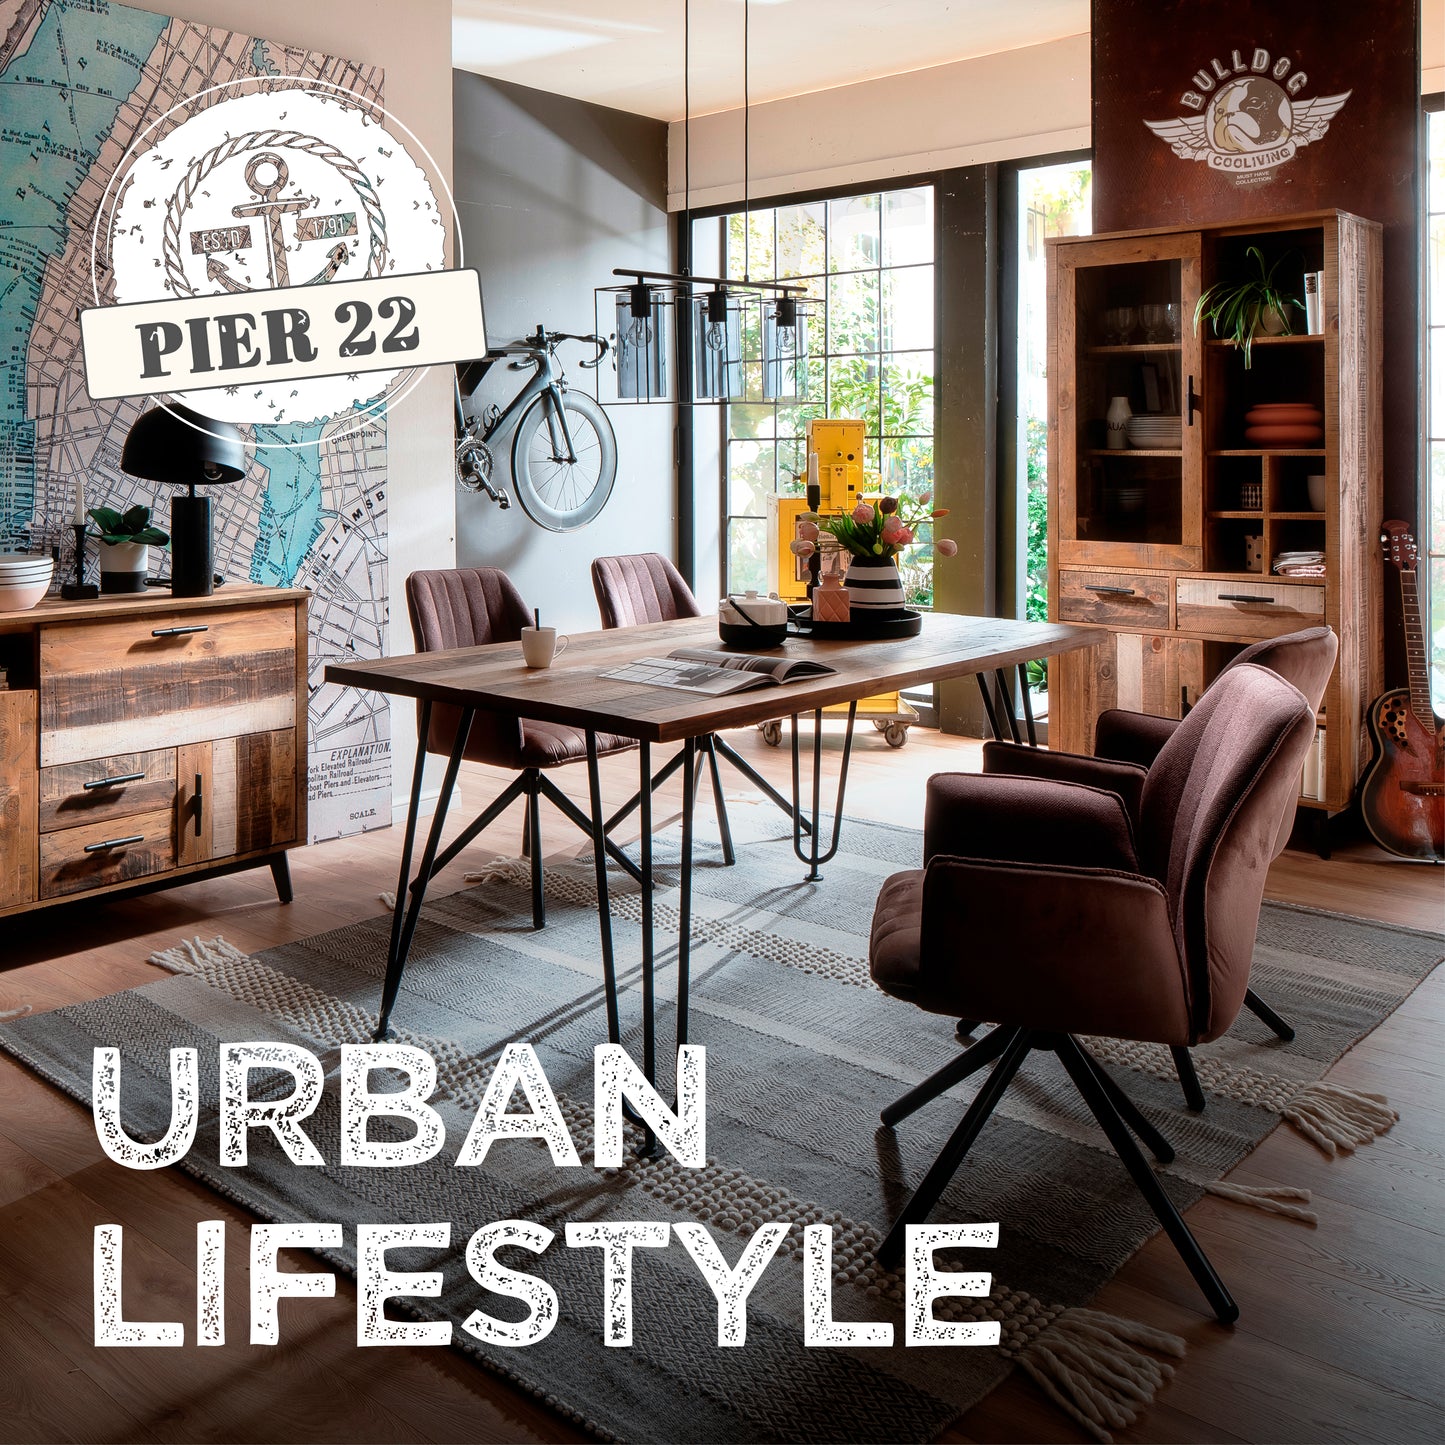 Pier 22 Kollektion Werbung mit Möbeln im Hintergrund und der Überschrift: Urban Lifestyle